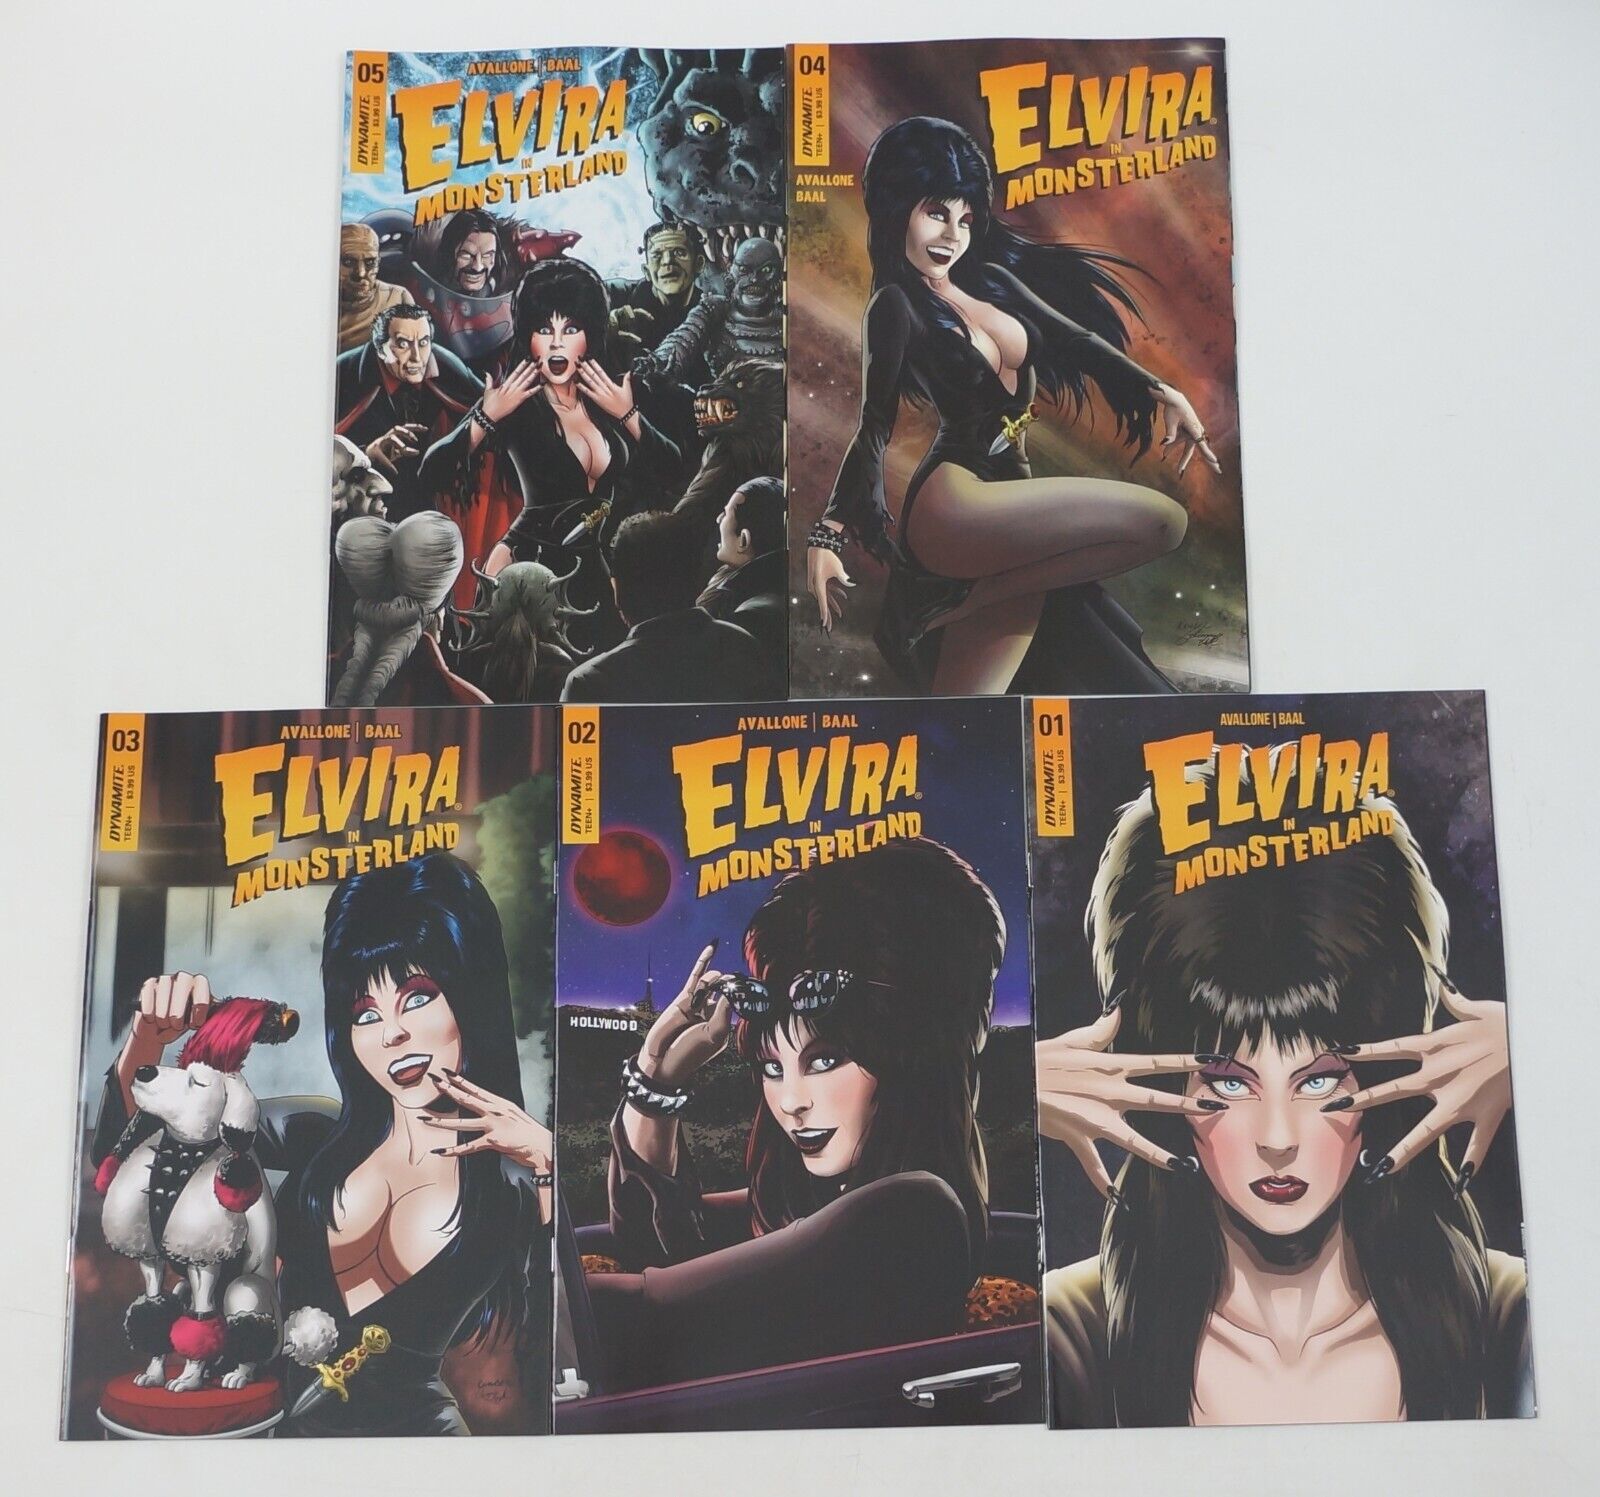 Elvira in Monsterland #1-5 VF/NM complete series Kewber Baal - all C variants